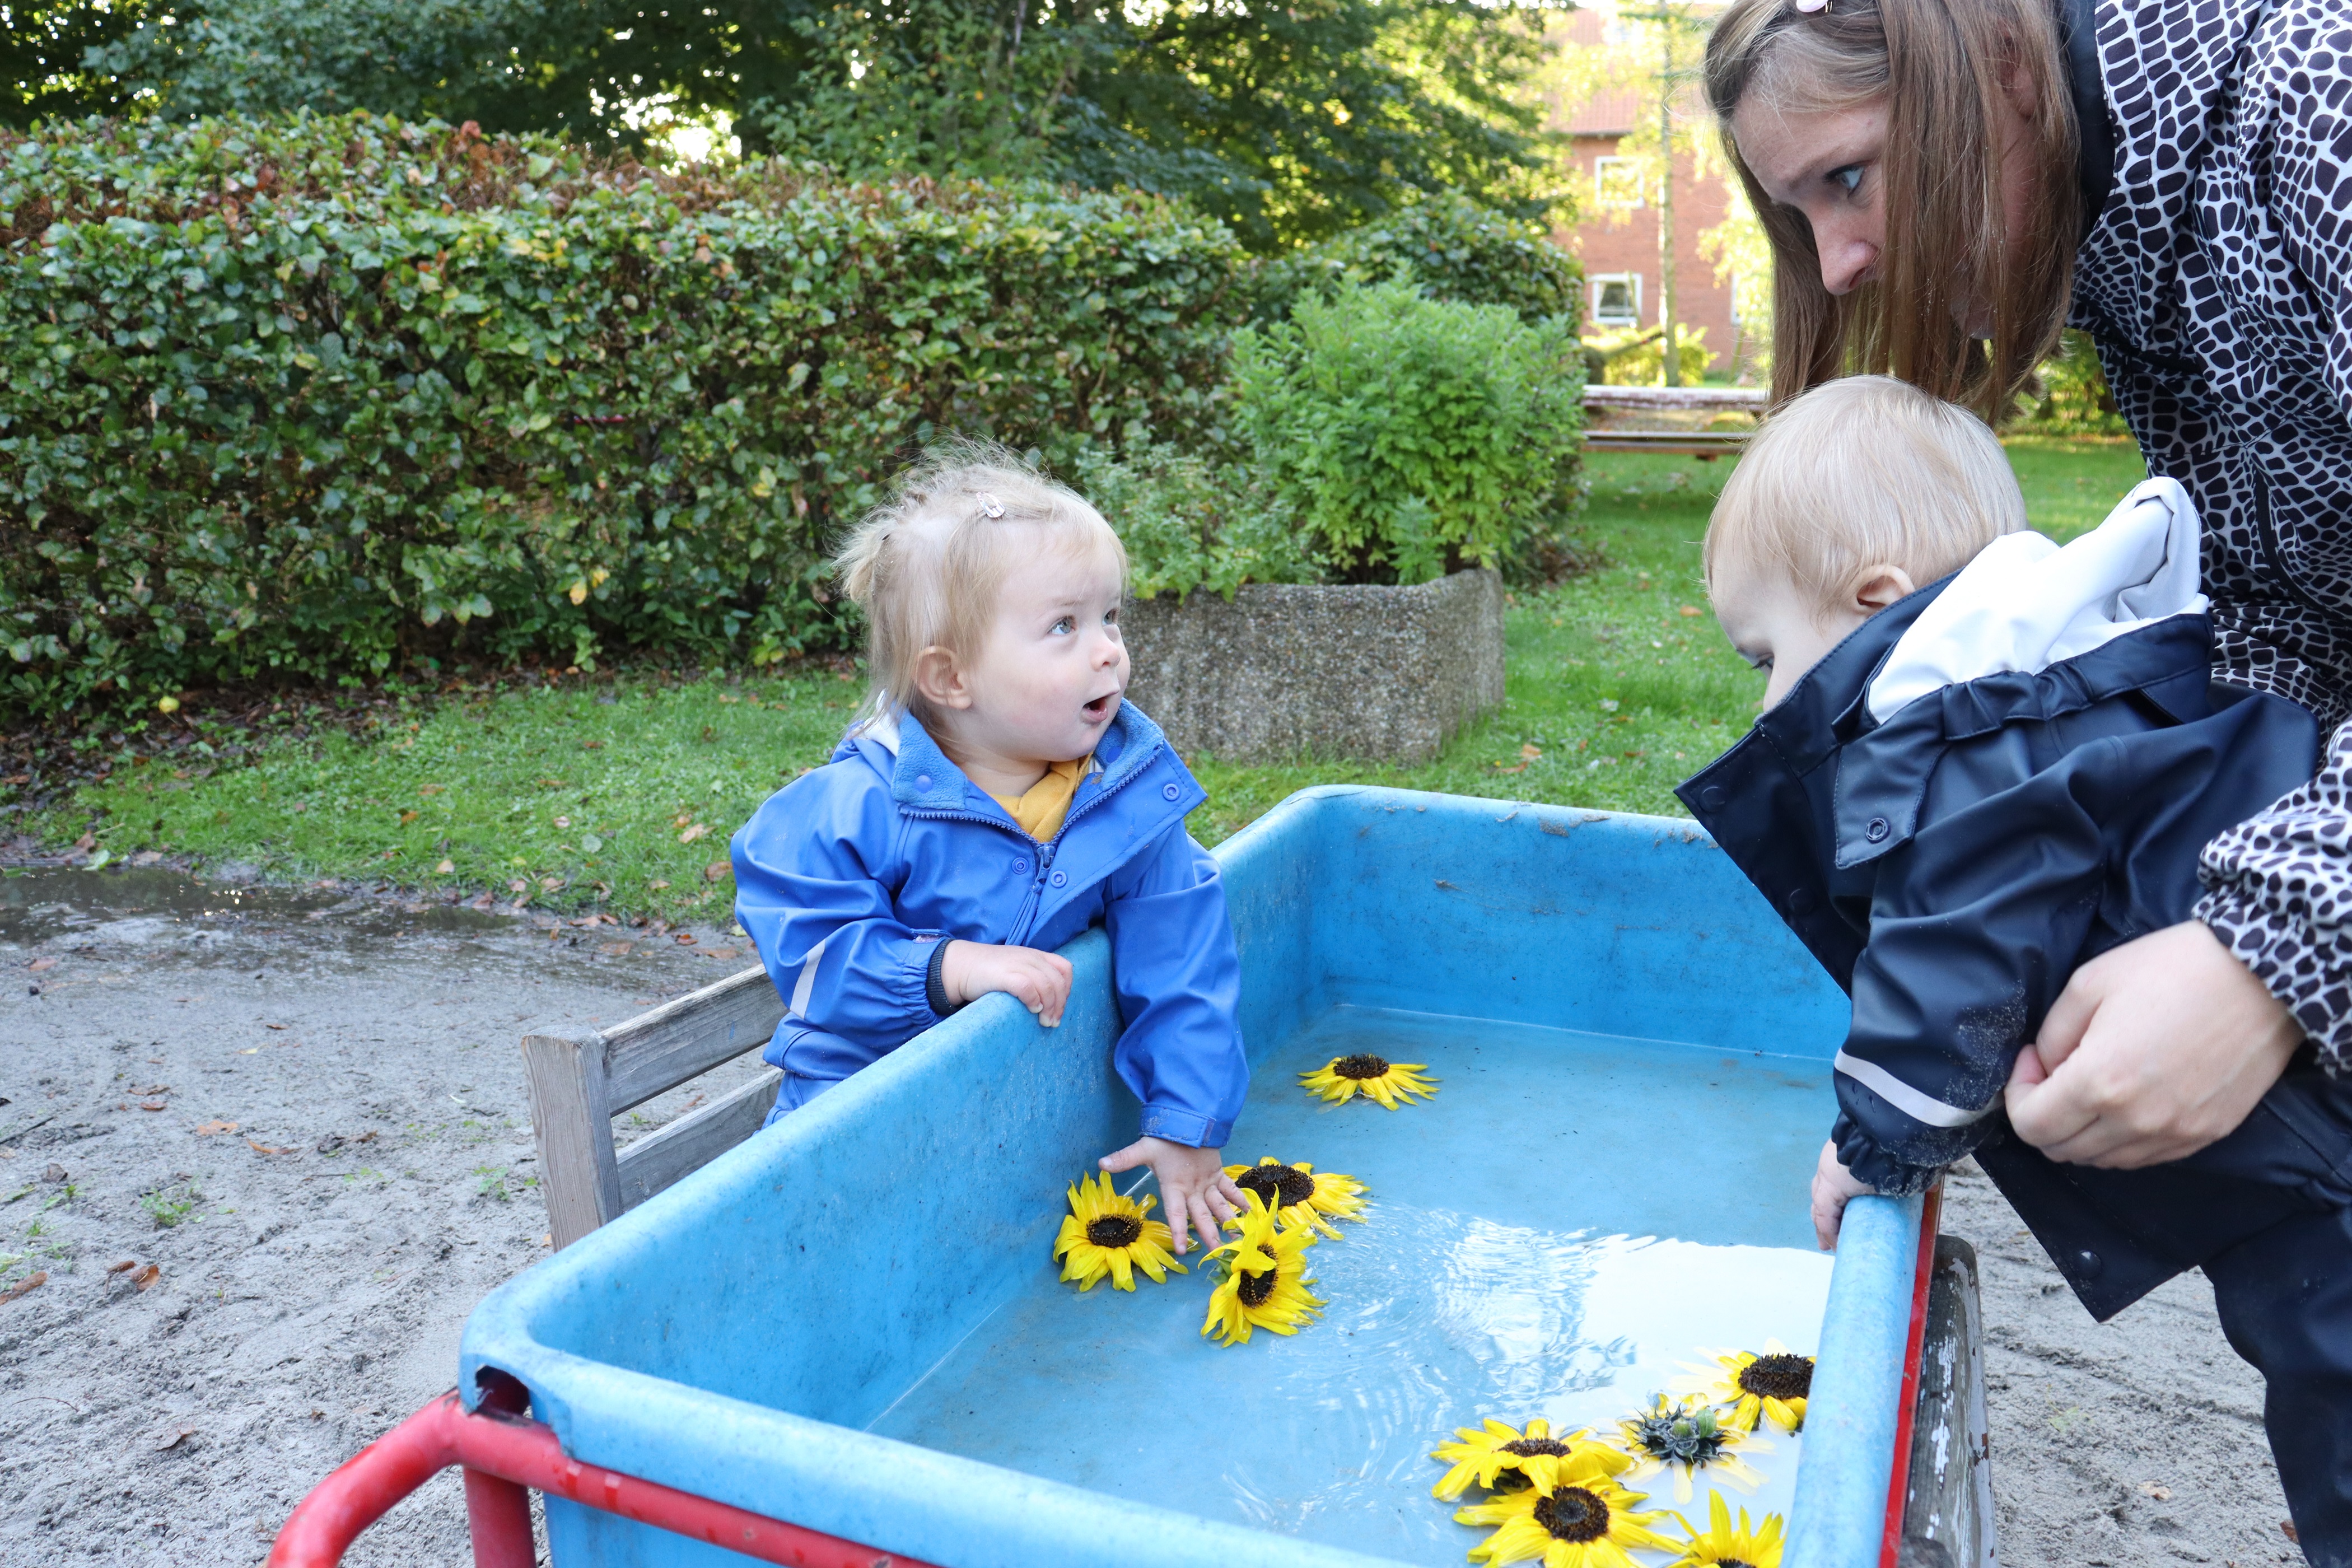 Pædagog holder barn, så han kan se vandet med blomster i, hvor et andet barn også står og kigger